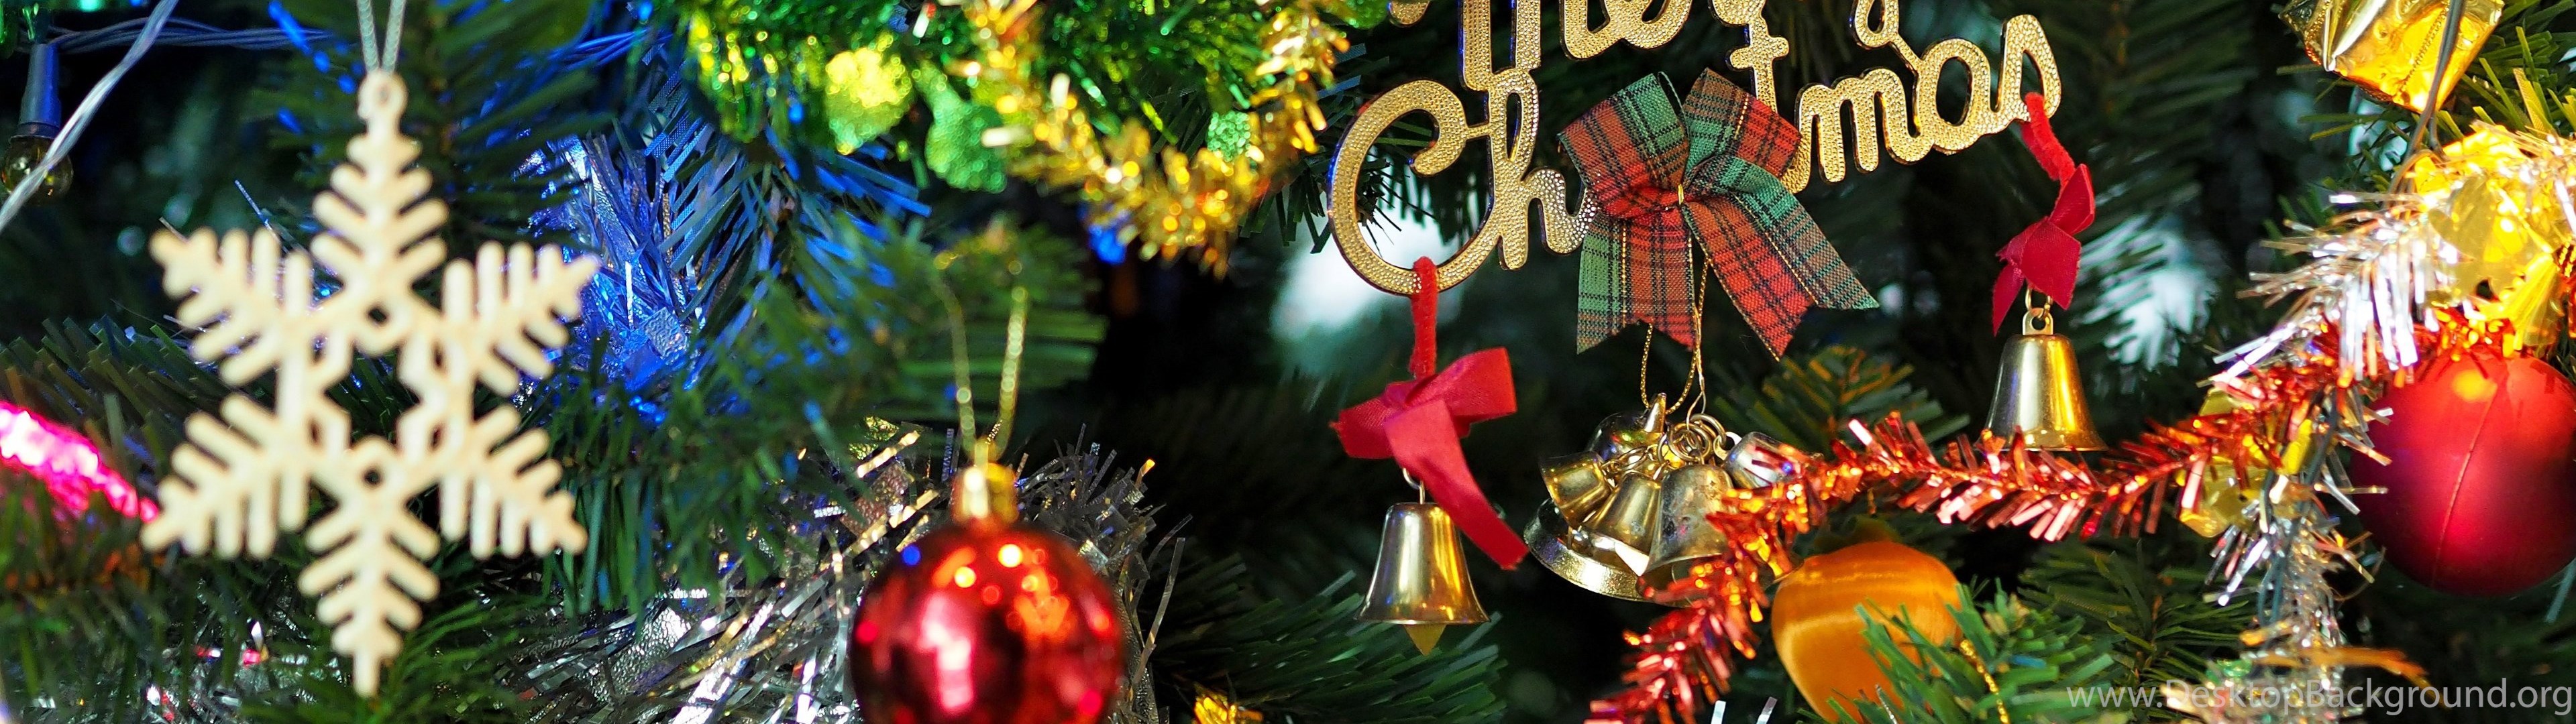 carta da parati di natale doppio monitor,ornamento di natale,decorazione natalizia,natale,albero di natale,vigilia di natale